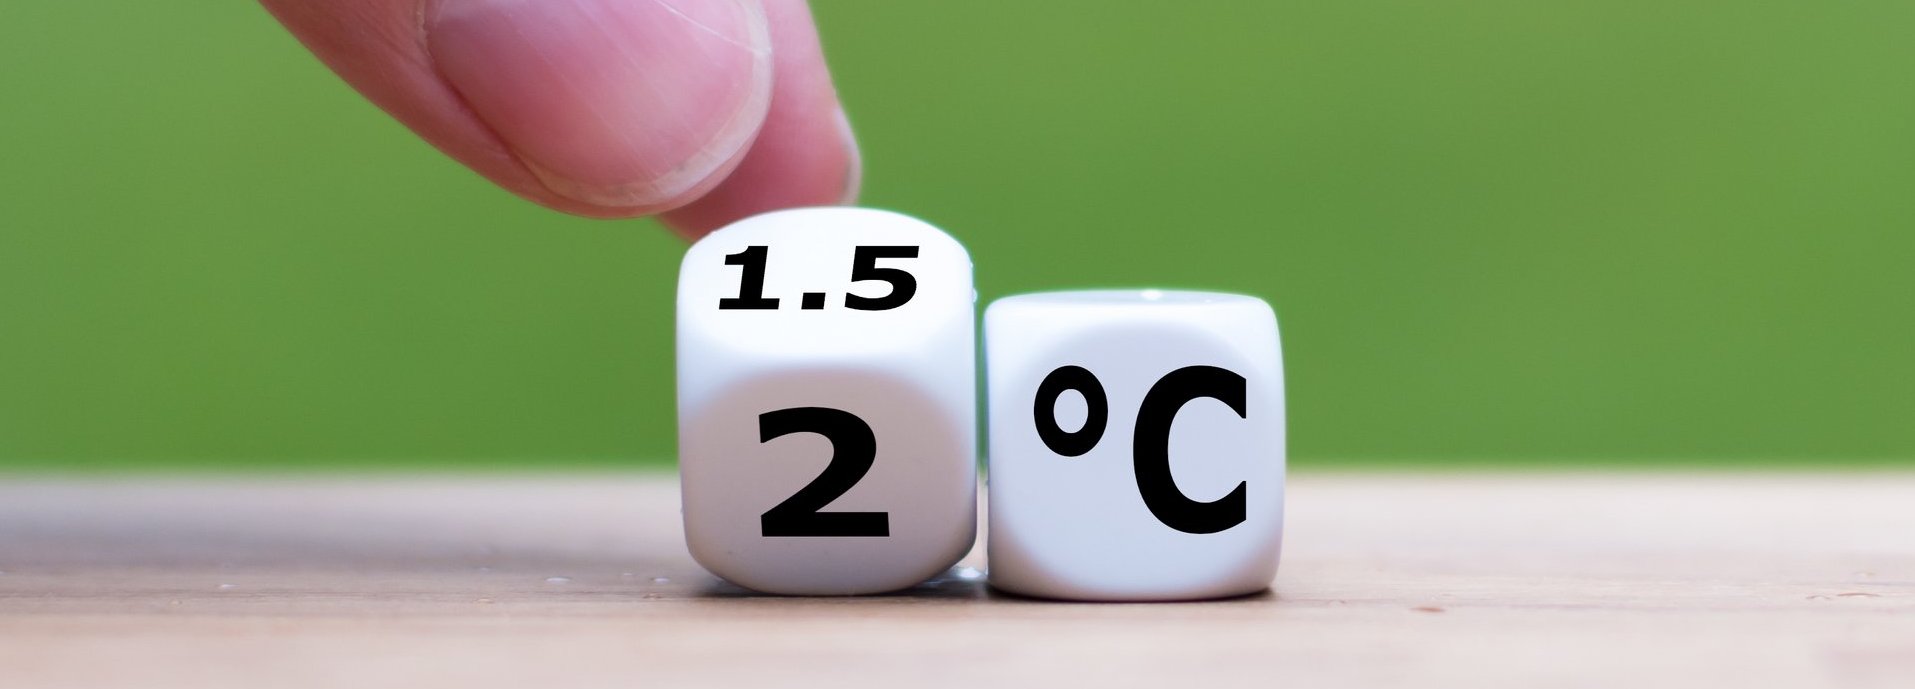 Symbol für die Begrenzung der globalen Erwärmung. Die Hand dreht einen Würfel und ändert den Ausdruck „2°C“ in „1,5°C“ oder umgekehrt.